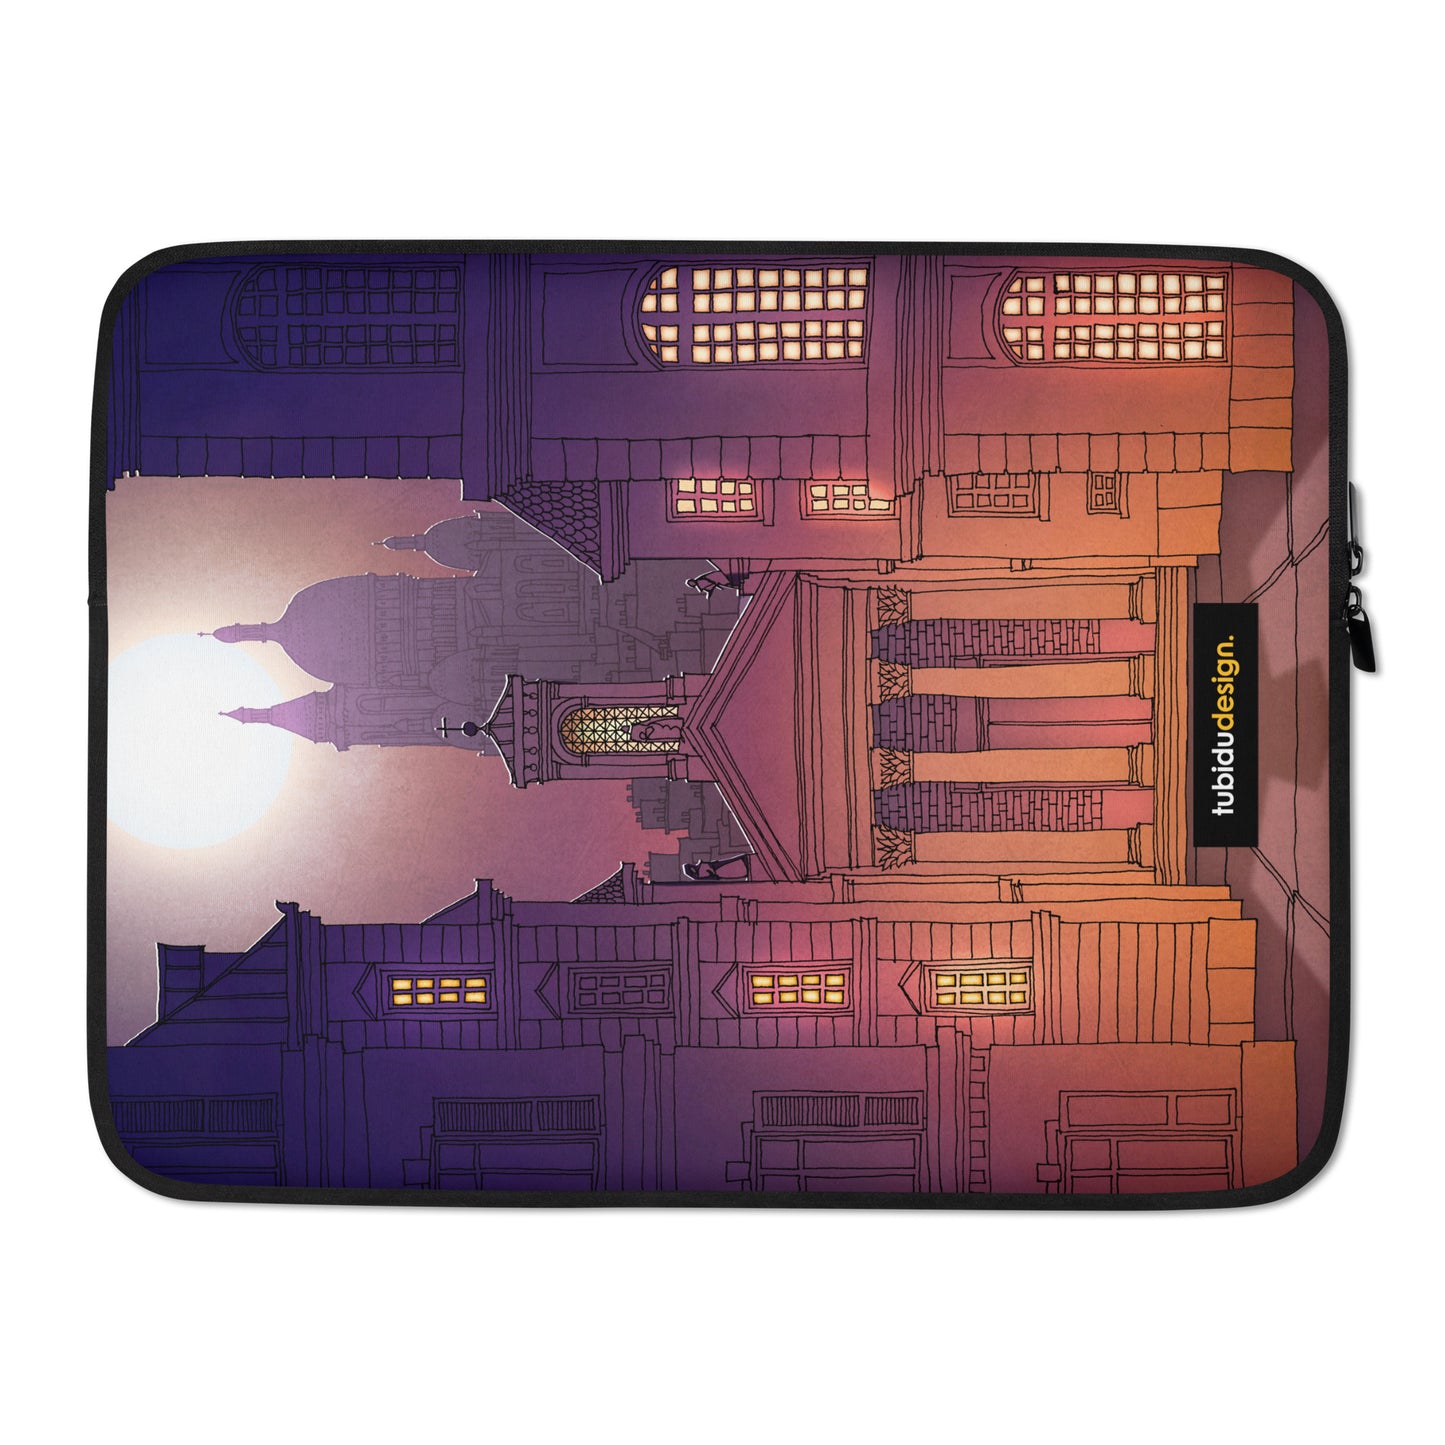 Sacre Coeur (deep purple) - Illustrated Laptop Sleeve